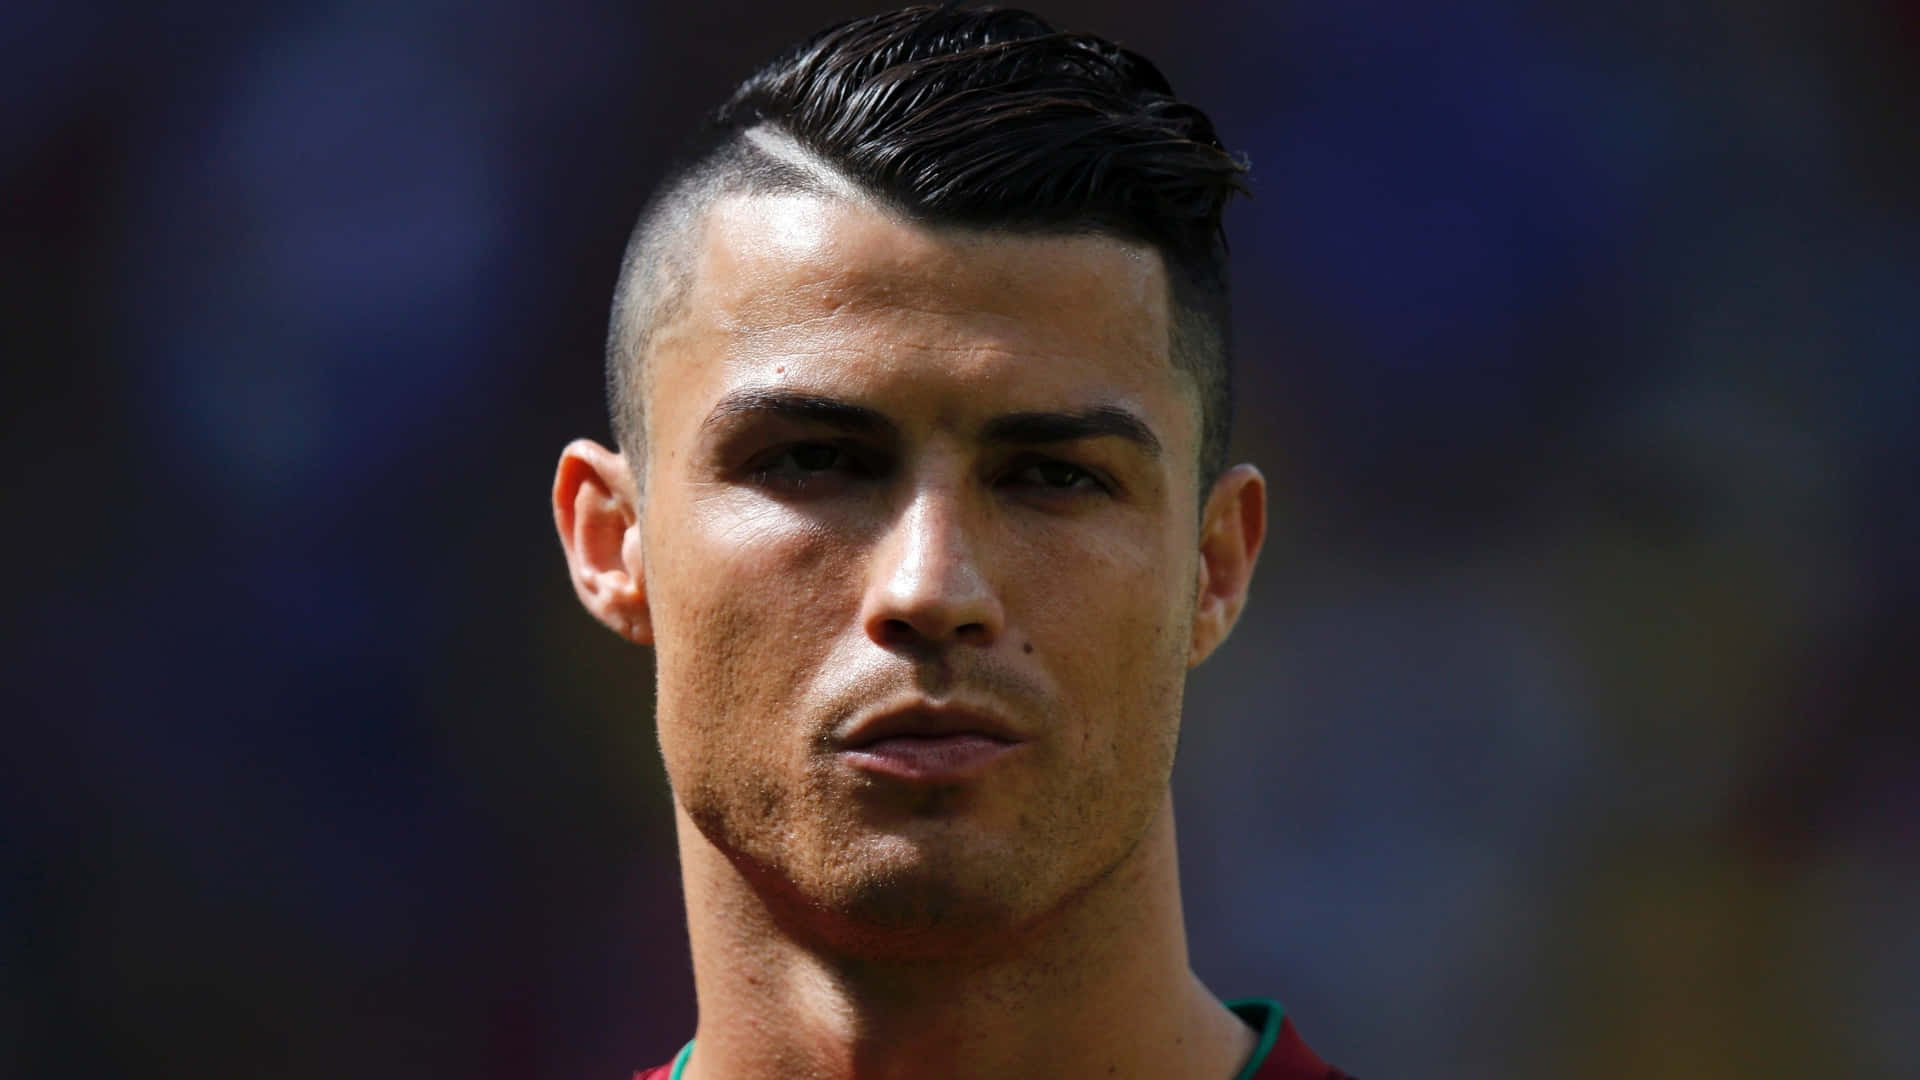 Ronaldo1920 X 1080 Bild